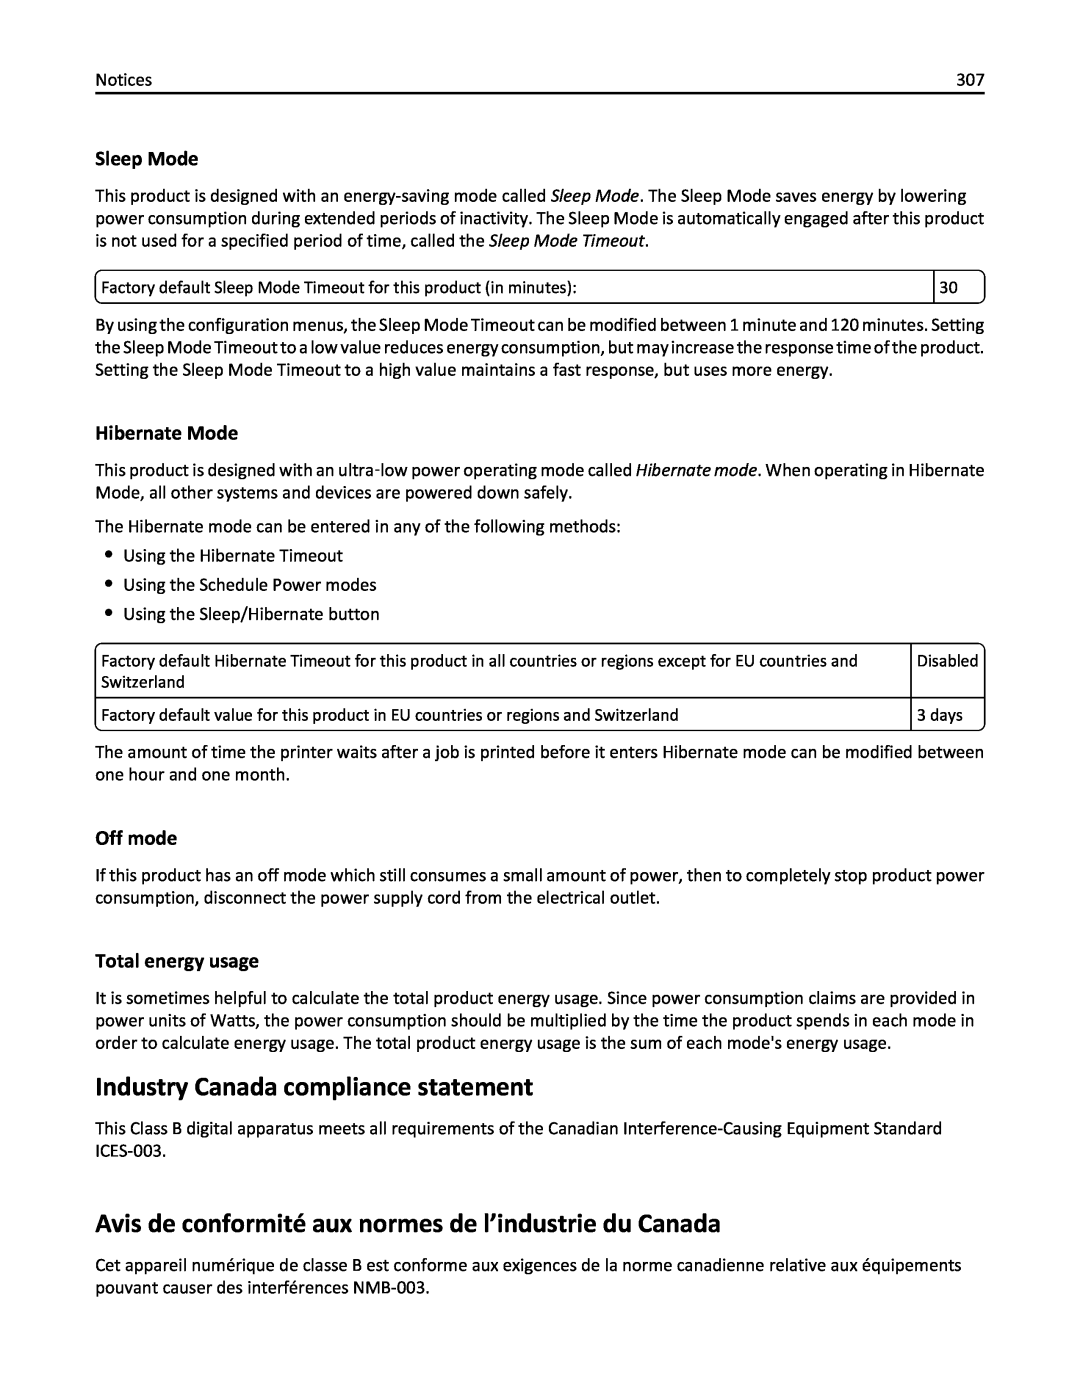 Lexmark MX410DE Industry Canada compliance statement, Avis de conformité aux normes de l’industrie du Canada, Sleep Mode 